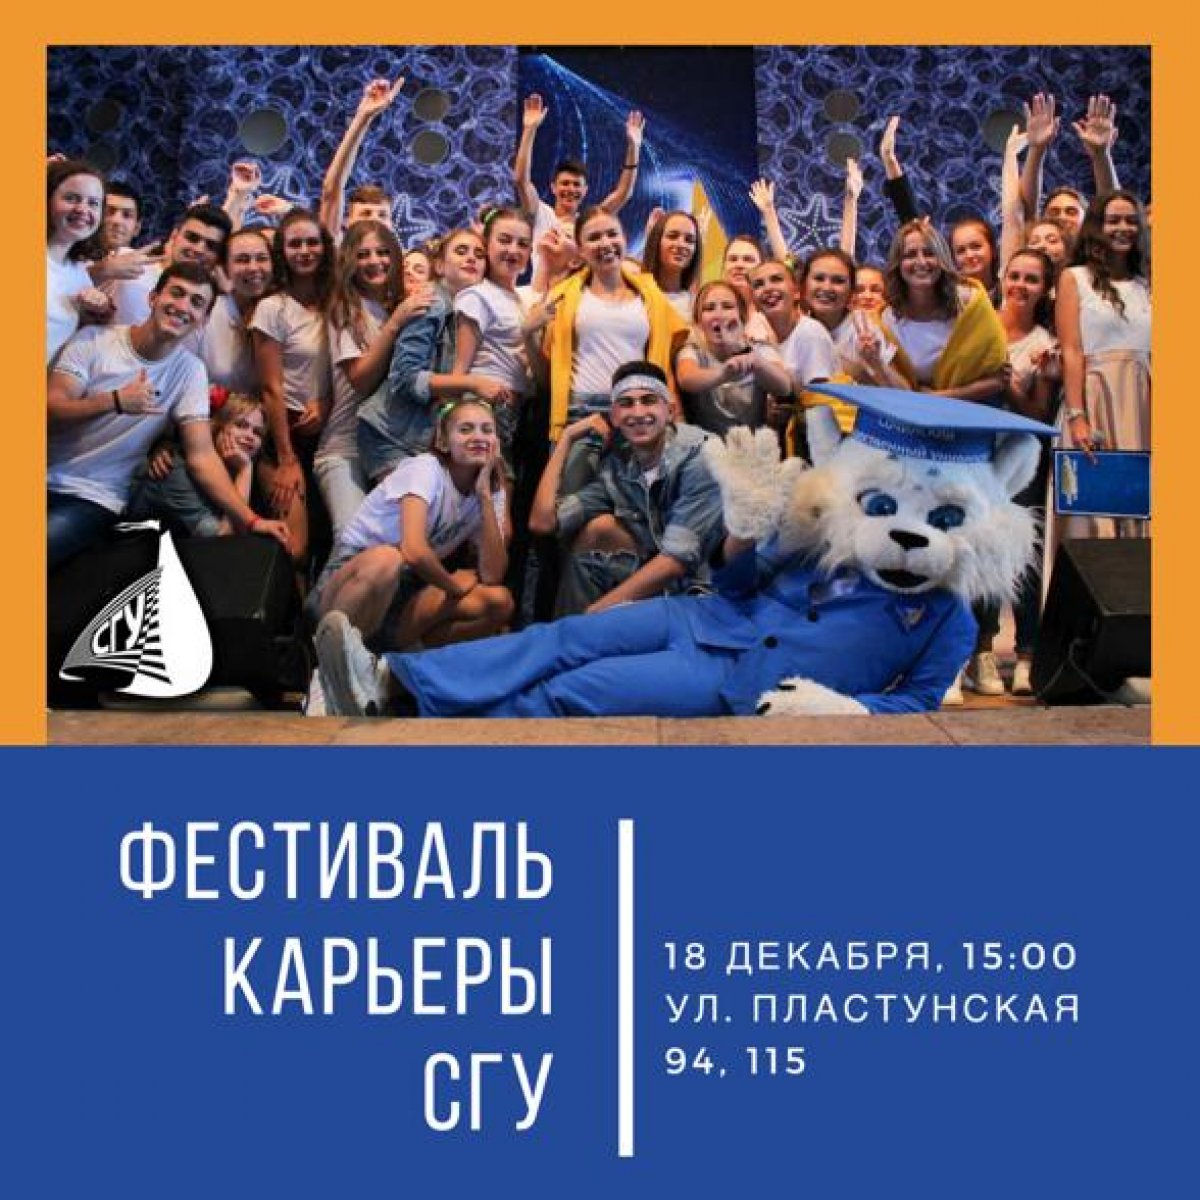 В Сочинском государственном университете опорном вузе Краснодарского края, 18 декабря пройдёт Фестиваль карьеры